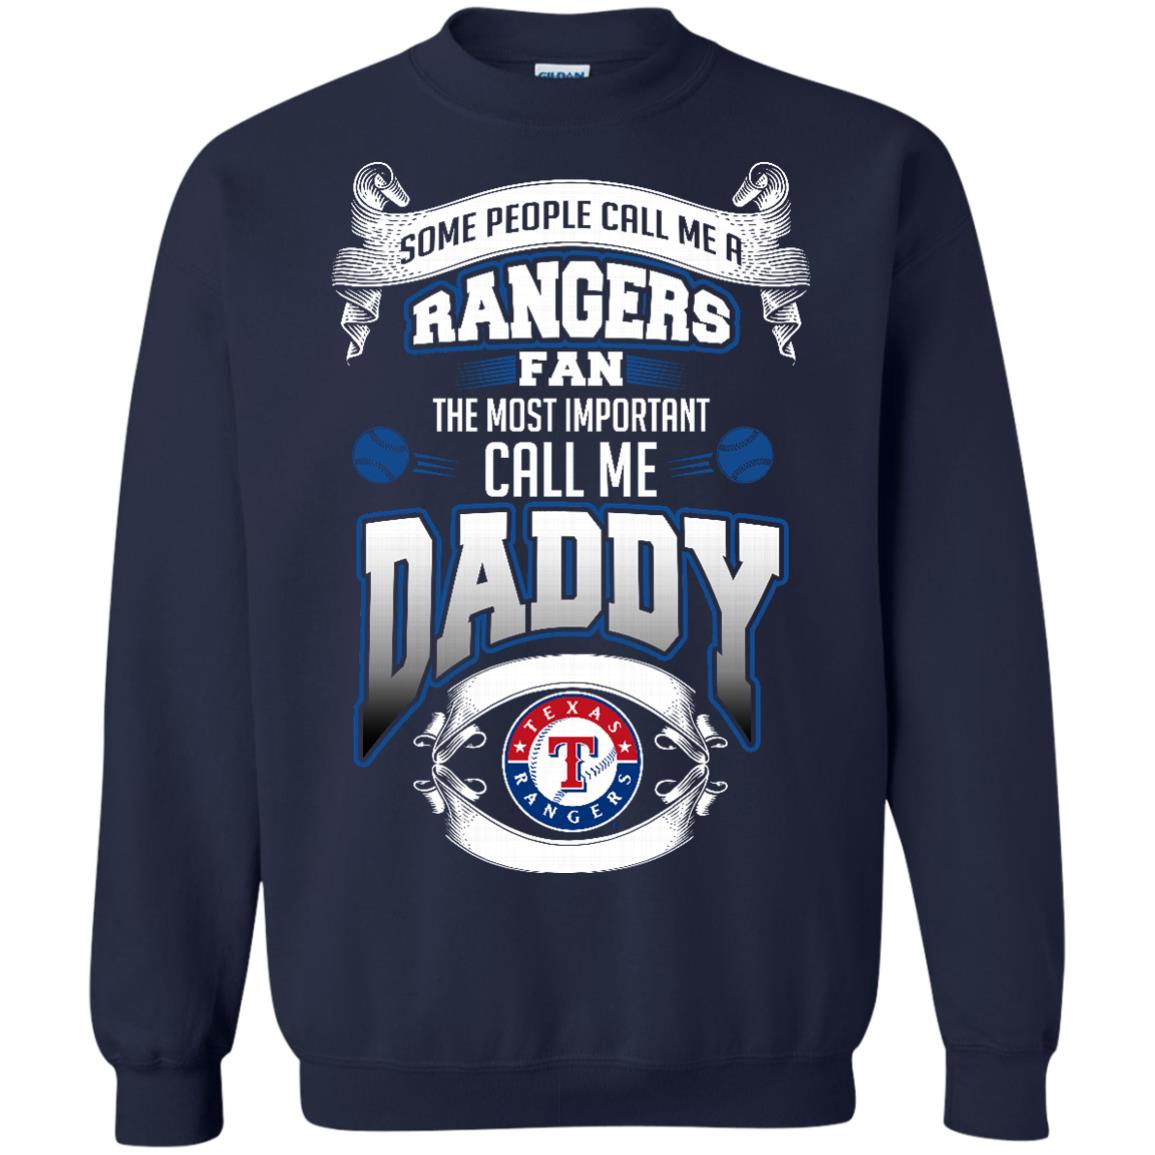 texas rangers shirts near me